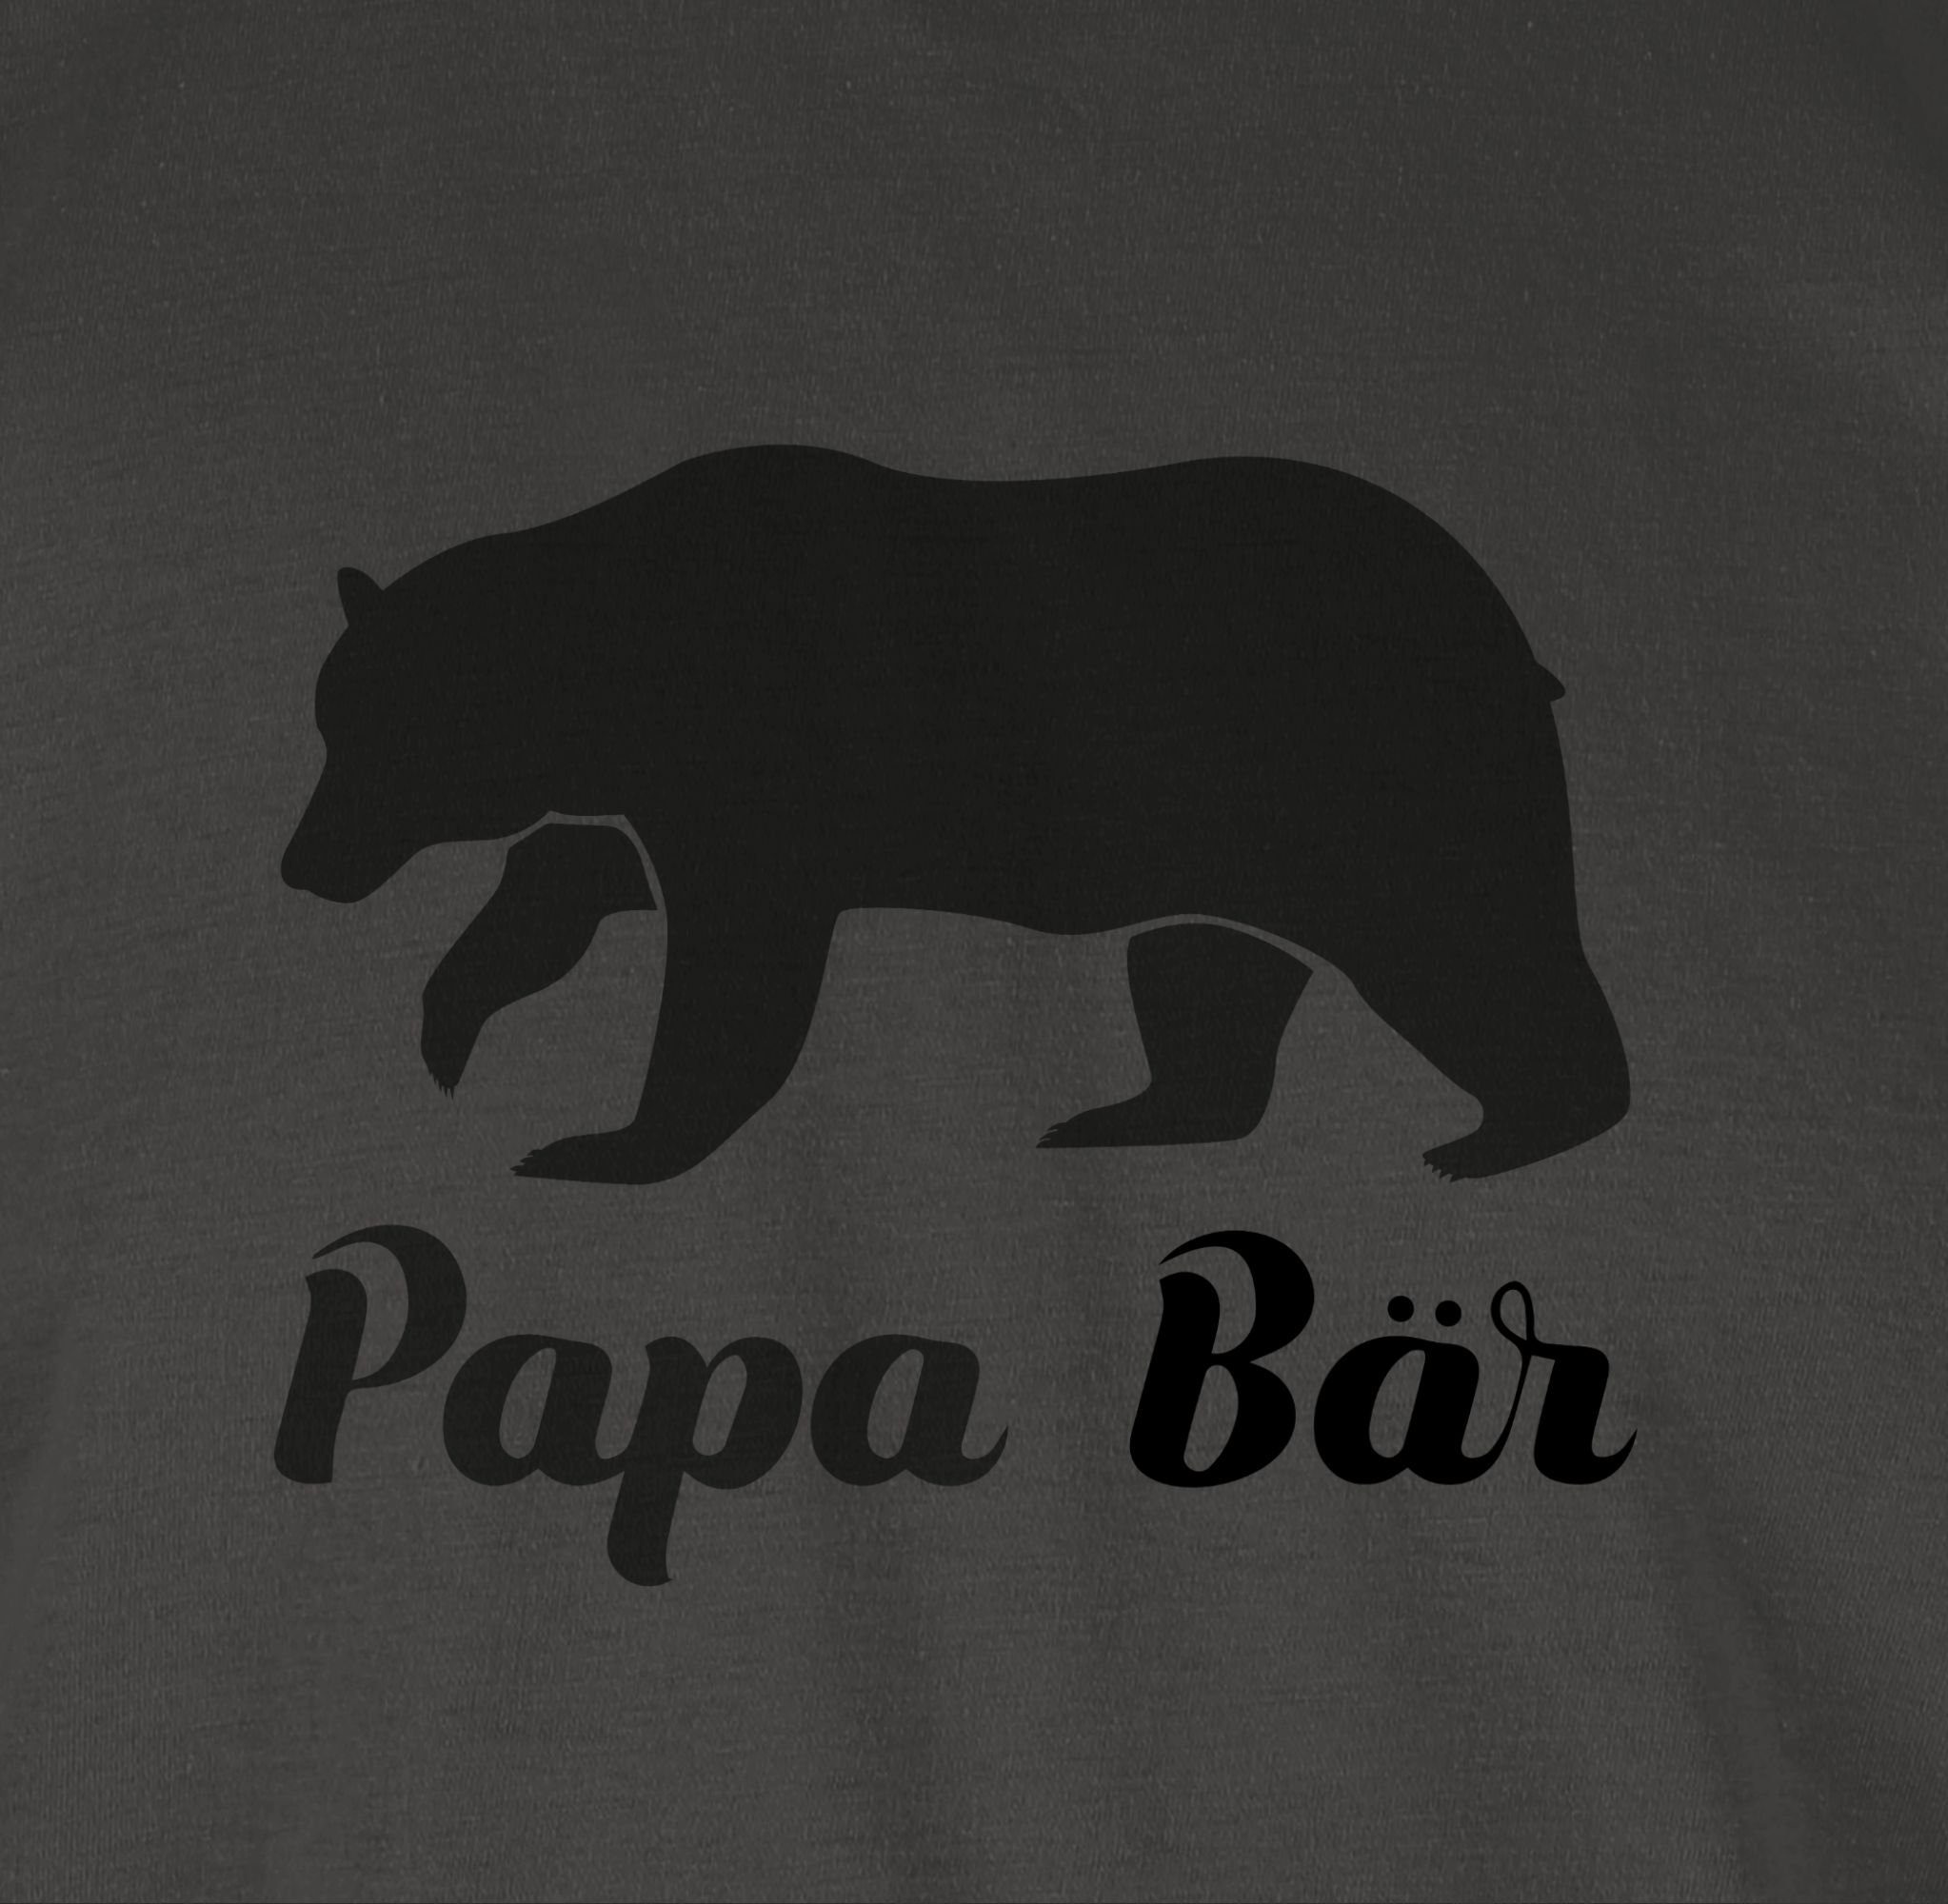 Dunkelgrau T-Shirt 1 Papa Vatertag Shirtracer Bär Papa für Geschenk